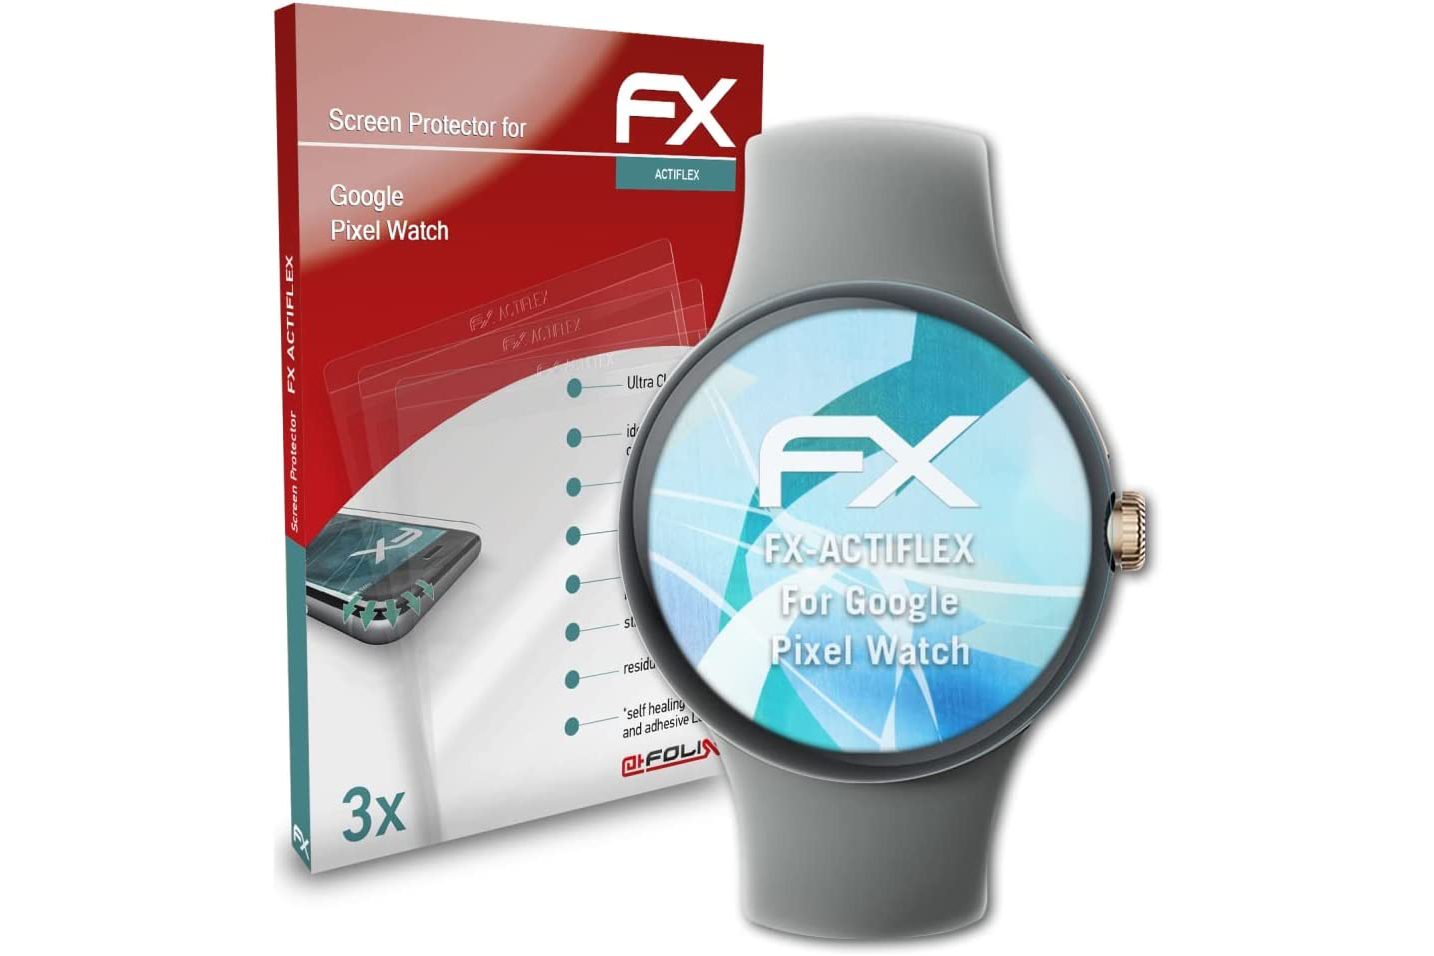 AtFoliX Protector de pantalla para Google Pixel Watch con reloj y caja.